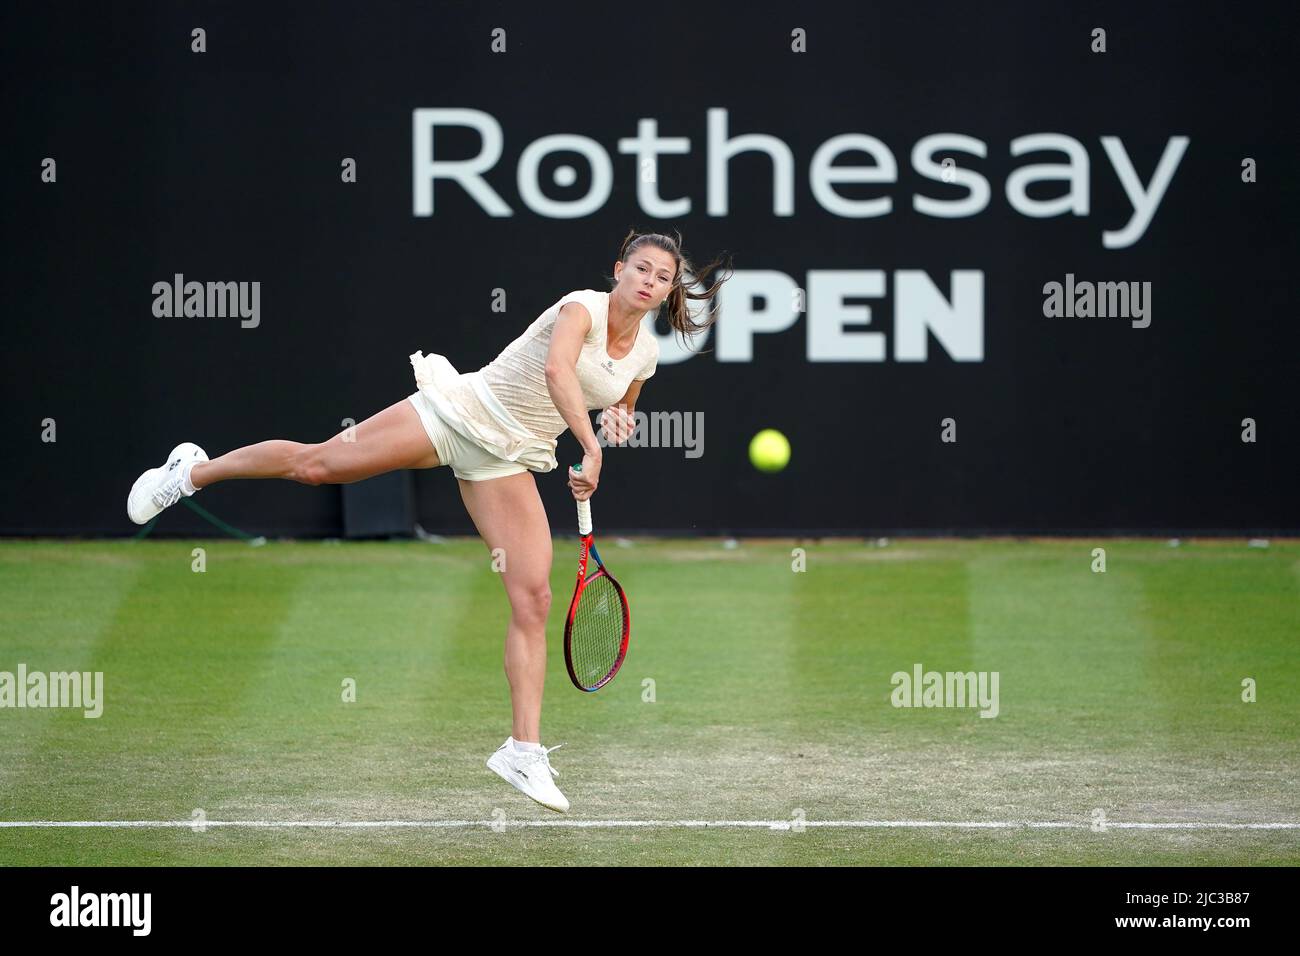 Camila Giorgi d'Italie en action contre le Harriet Dart de Grande-Bretagne le sixième jour de l'Open de Rothesay 2022 au centre de tennis de Nottingham, Nottingham. Date de la photo: Jeudi 9 juin 2022. Banque D'Images